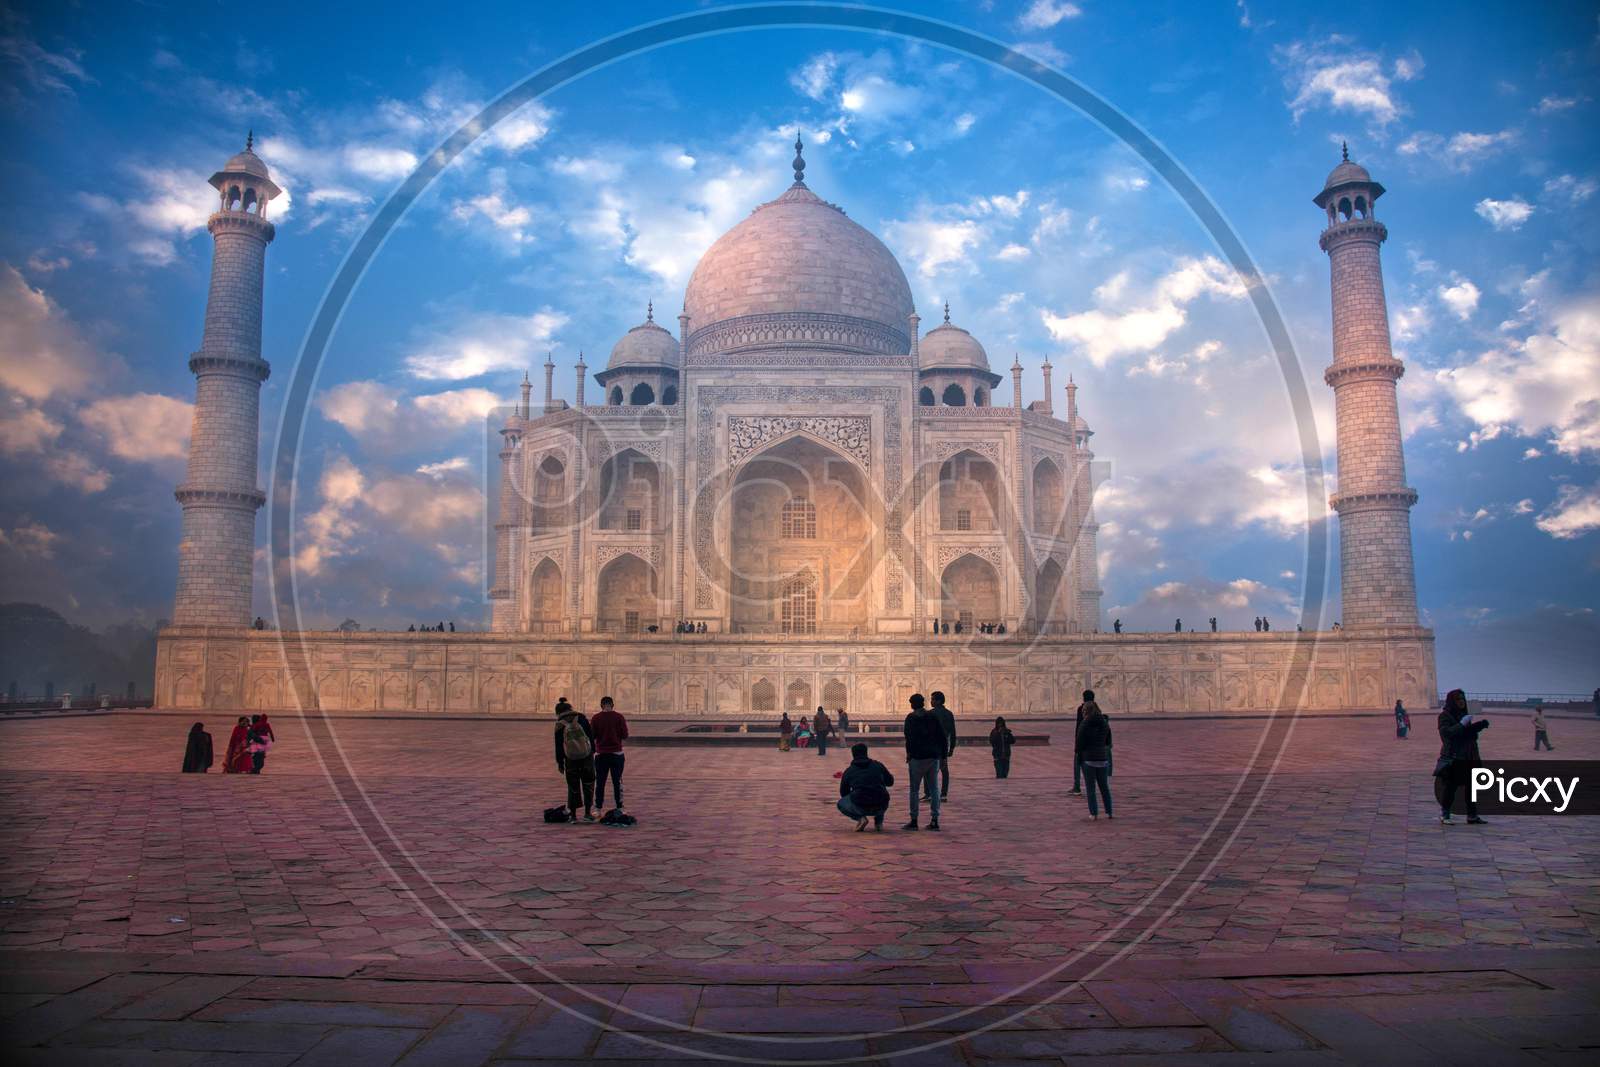 The Beautiful Taj Mahal